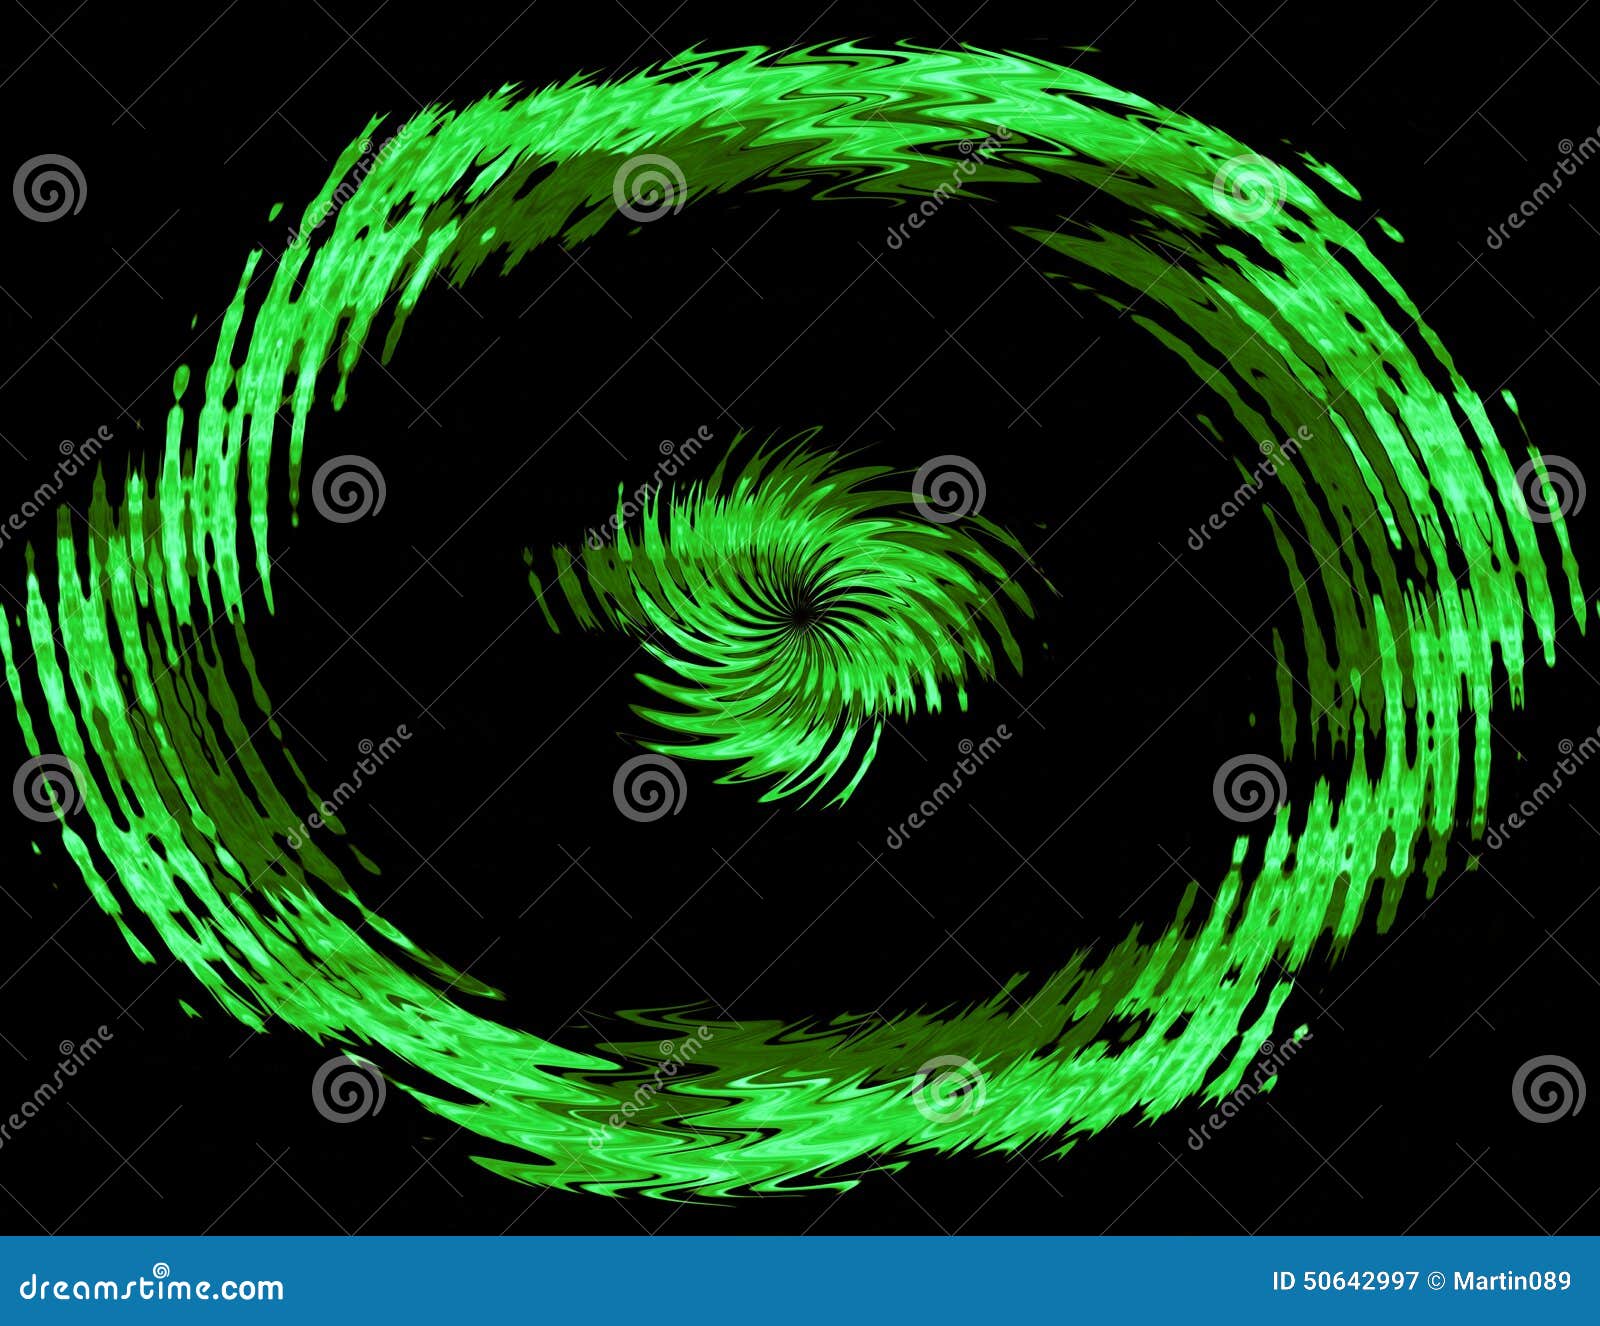 abstract green circle